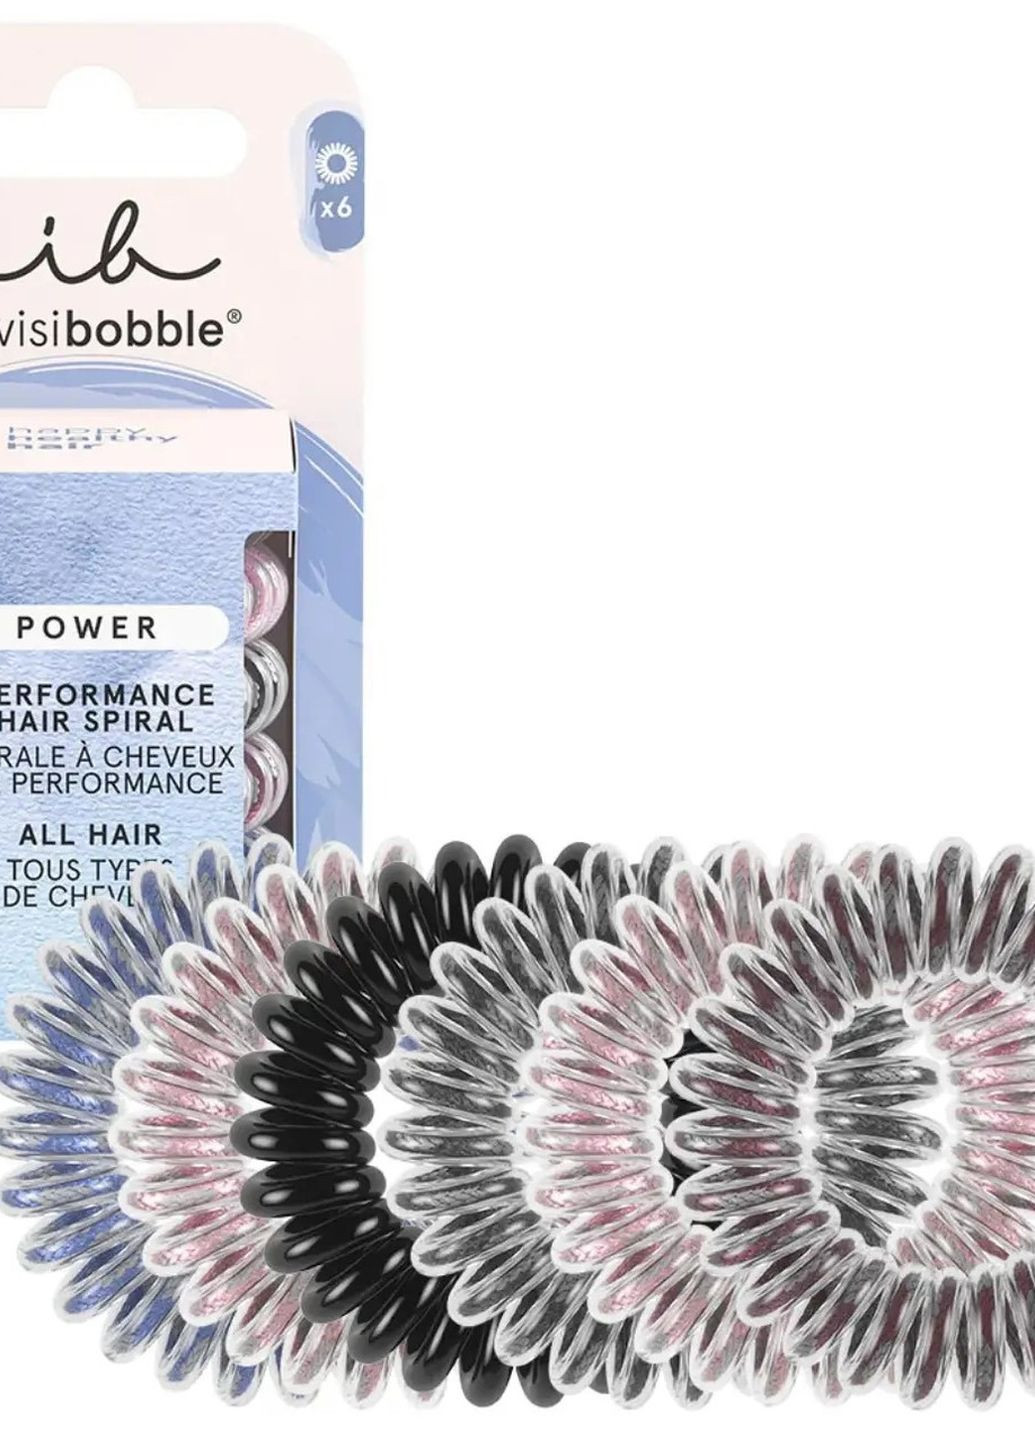 Резинка-браслет для волос POWER Be visible, 6шт Invisibobble (270368677)